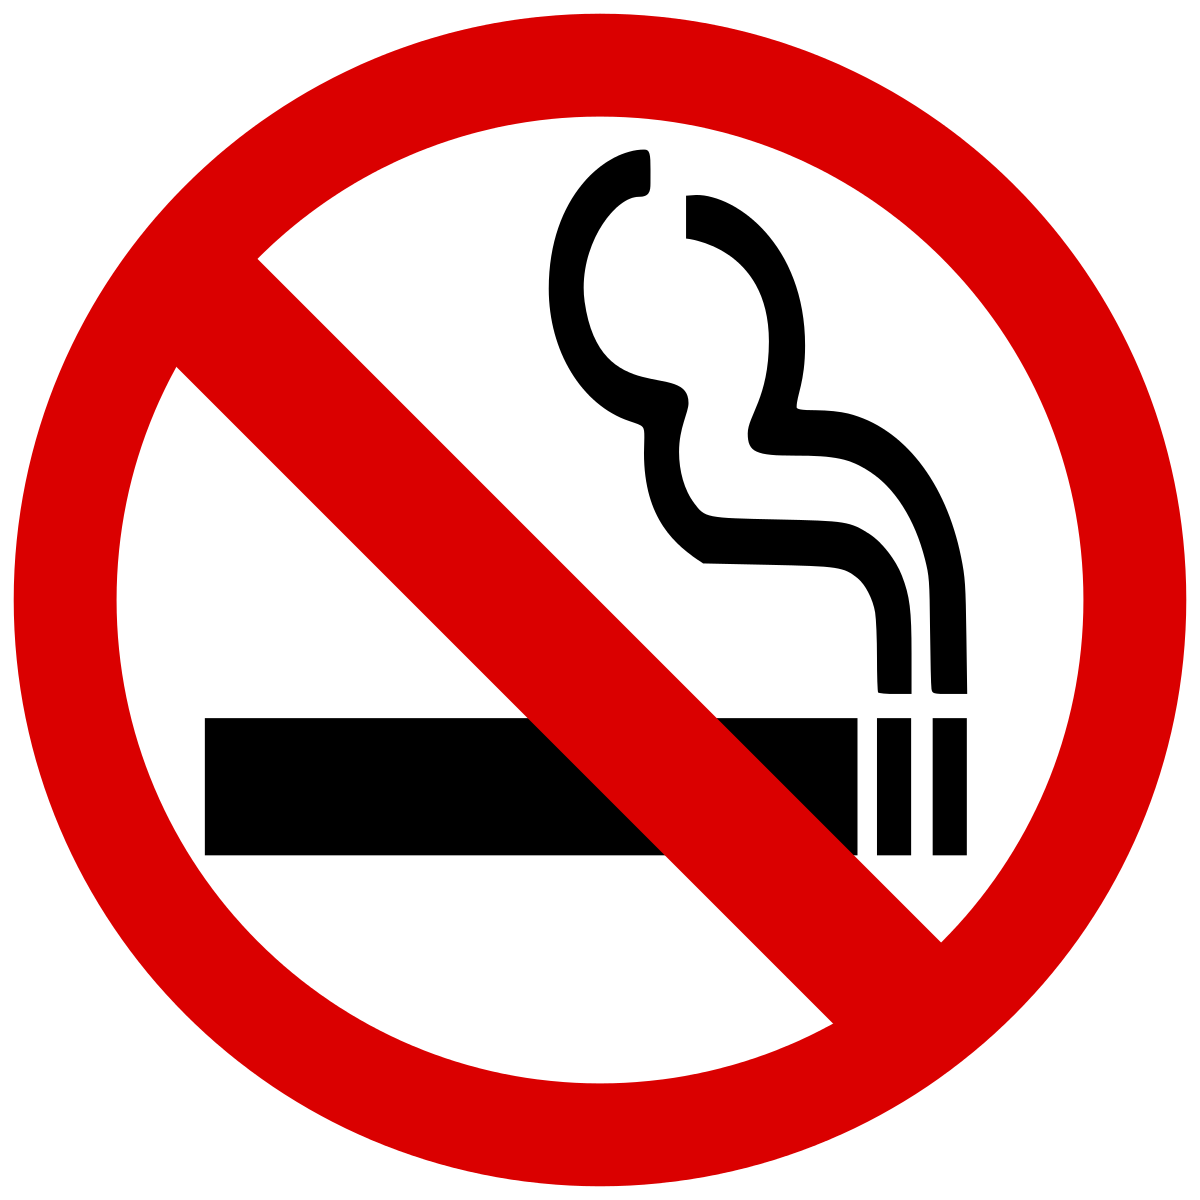 ممنوع التدخين هنا الصور الشفافة